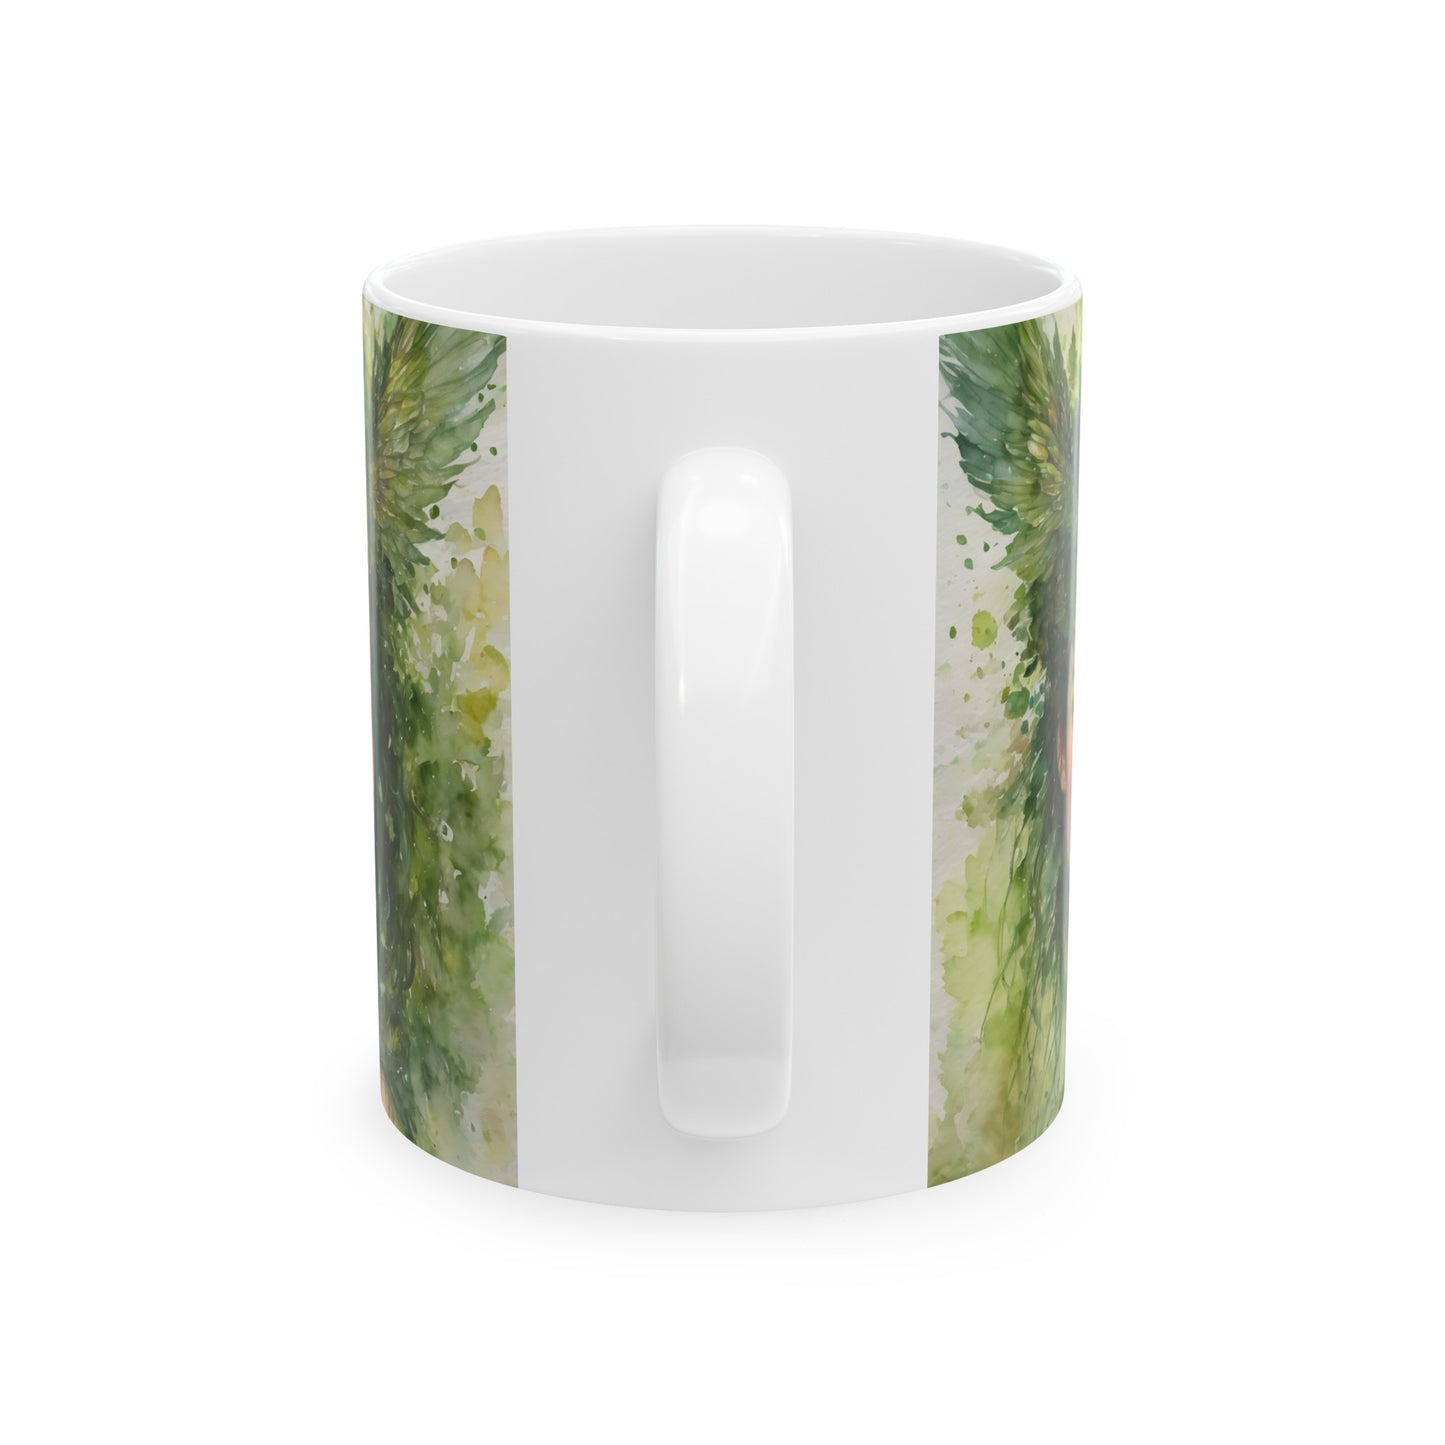 Magical Moldavite Forest Fairy Ceramic Mug 11oz